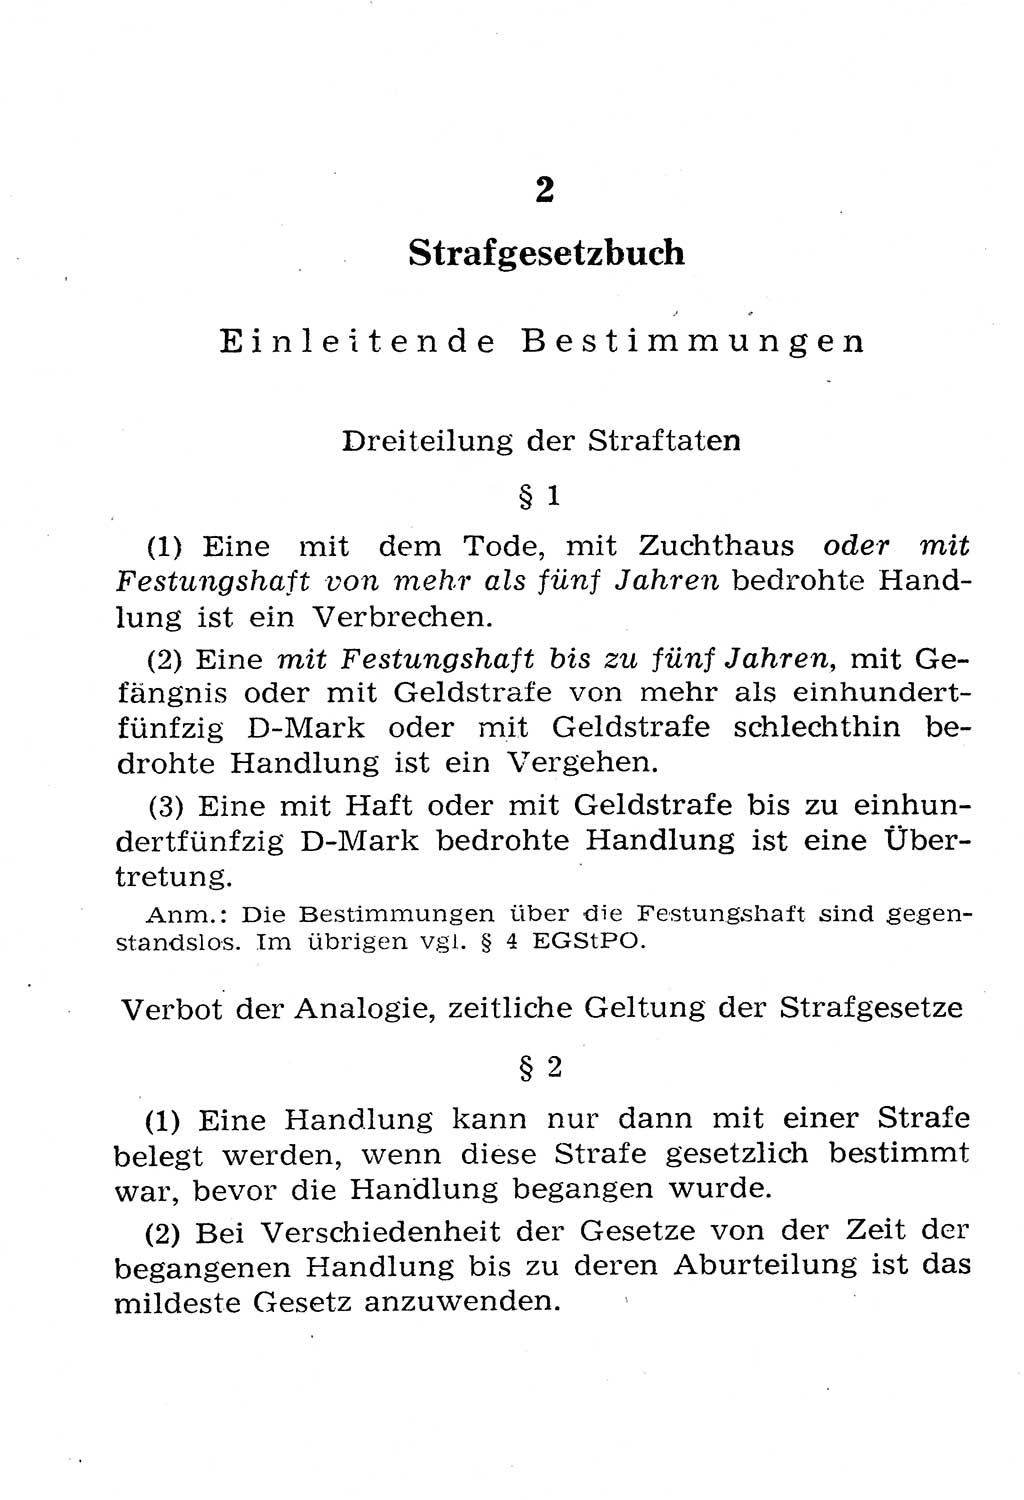 Strafgesetzbuch (StGB) und andere Strafgesetze [Deutsche Demokratische Republik (DDR)] 1958, Seite 22 (StGB Strafges. DDR 1958, S. 22)